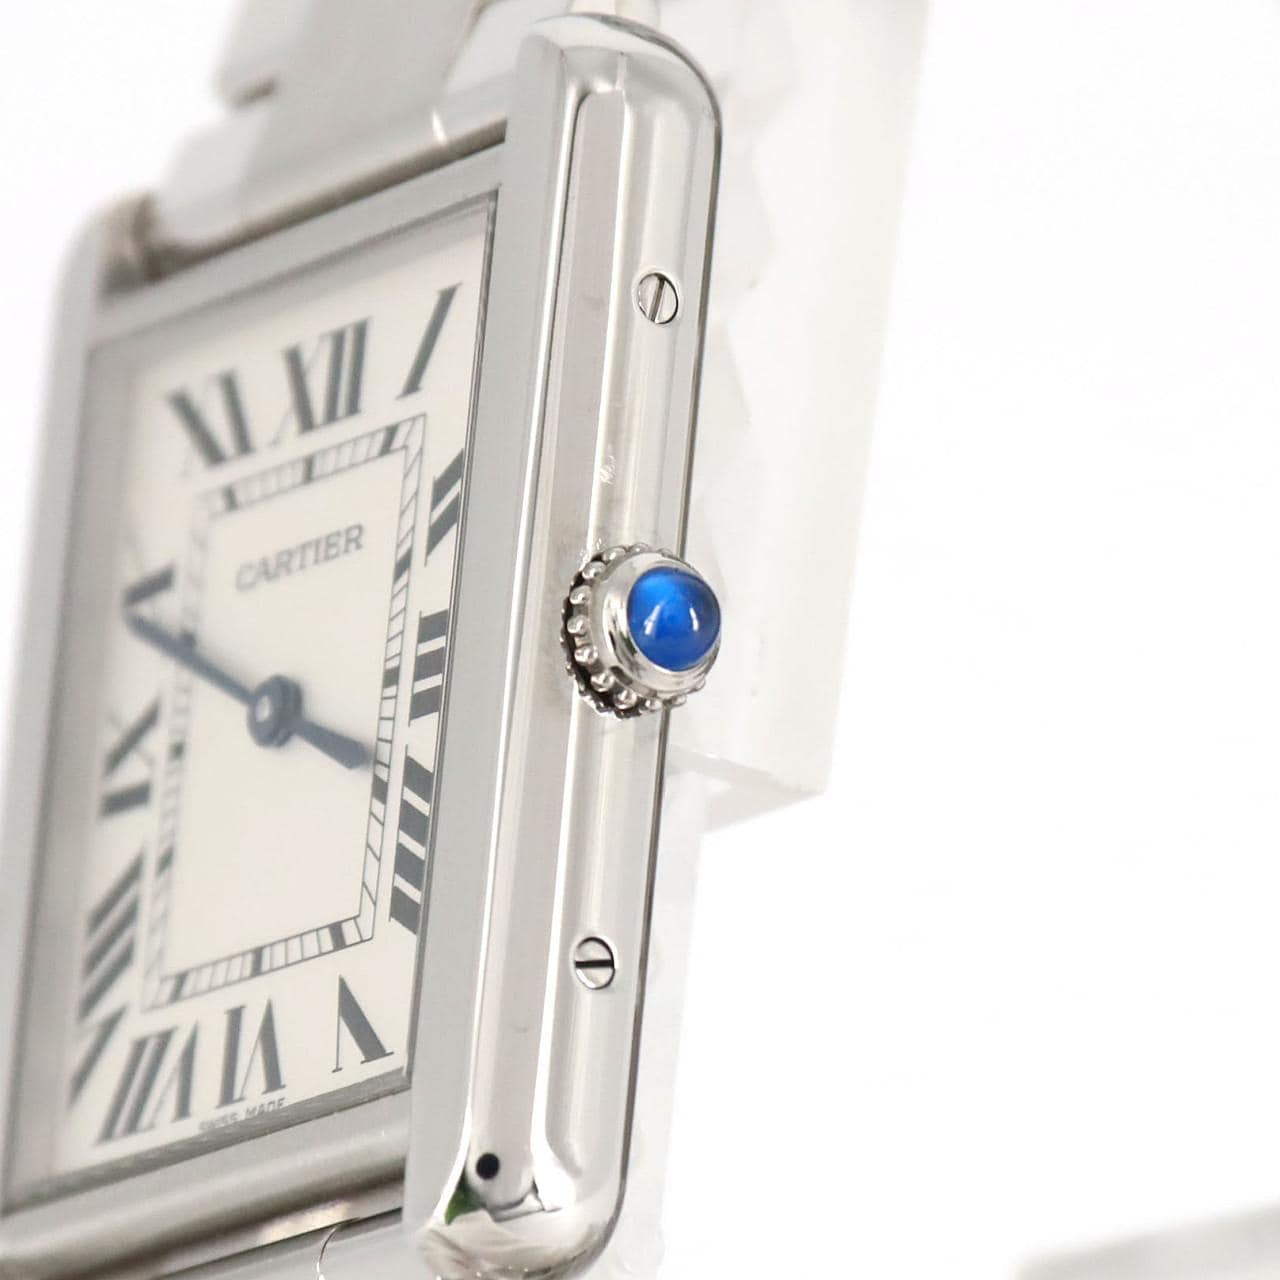 購入前コメント必須】カルティエ タンクソロ LM W5200014 - 腕時計(アナログ)